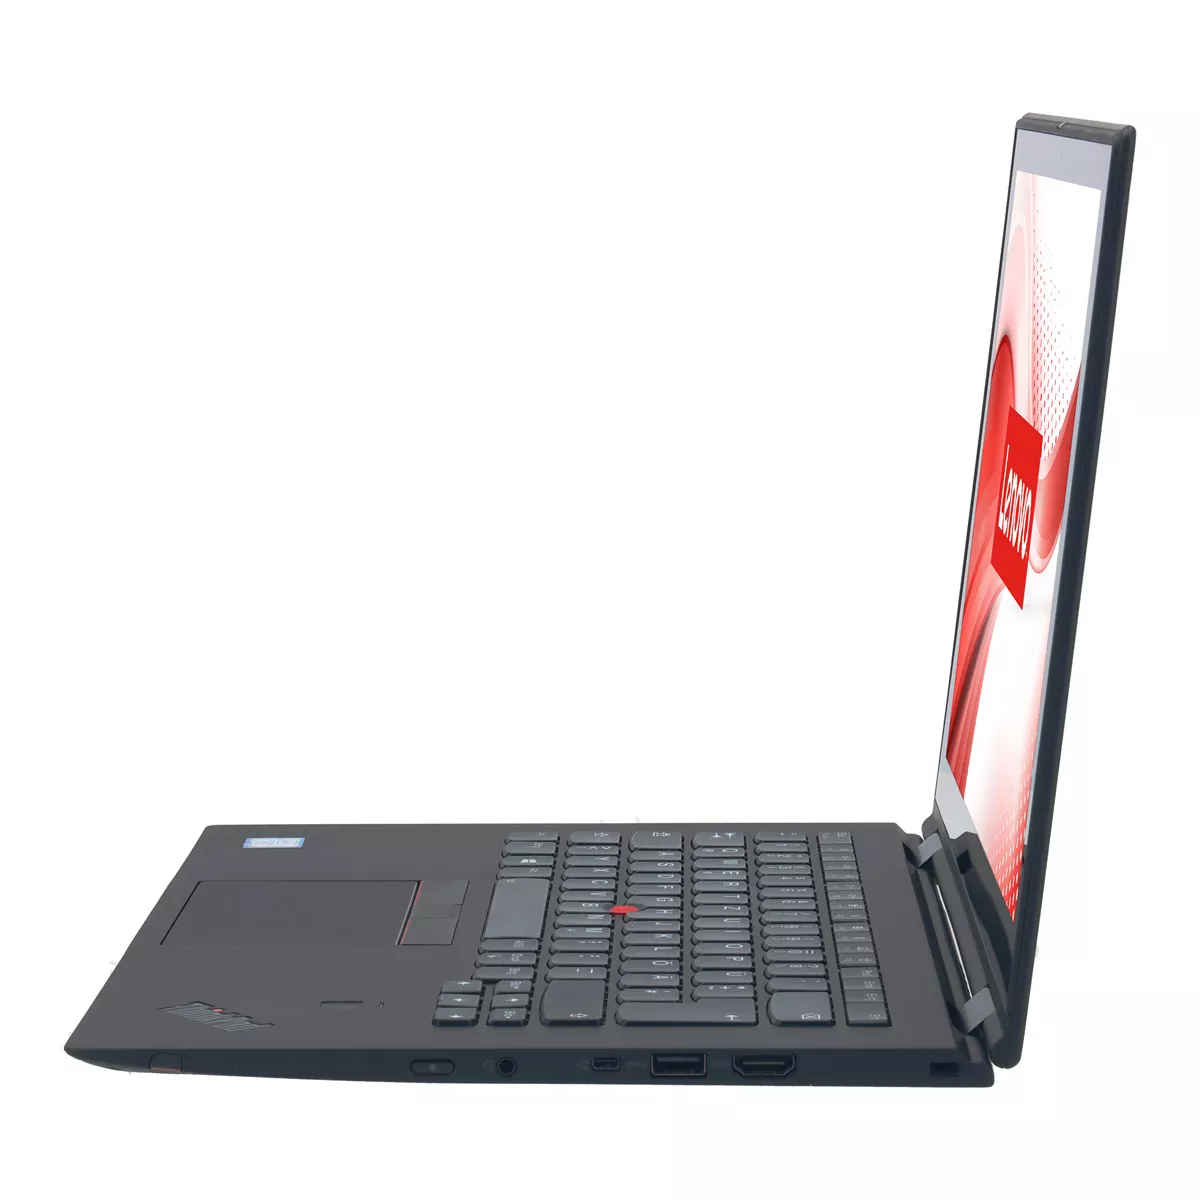 Lenovo ThinkPad X1 Yoga G3 Core i5 8350U Touch 240 GB M.2 SSD Webcam B